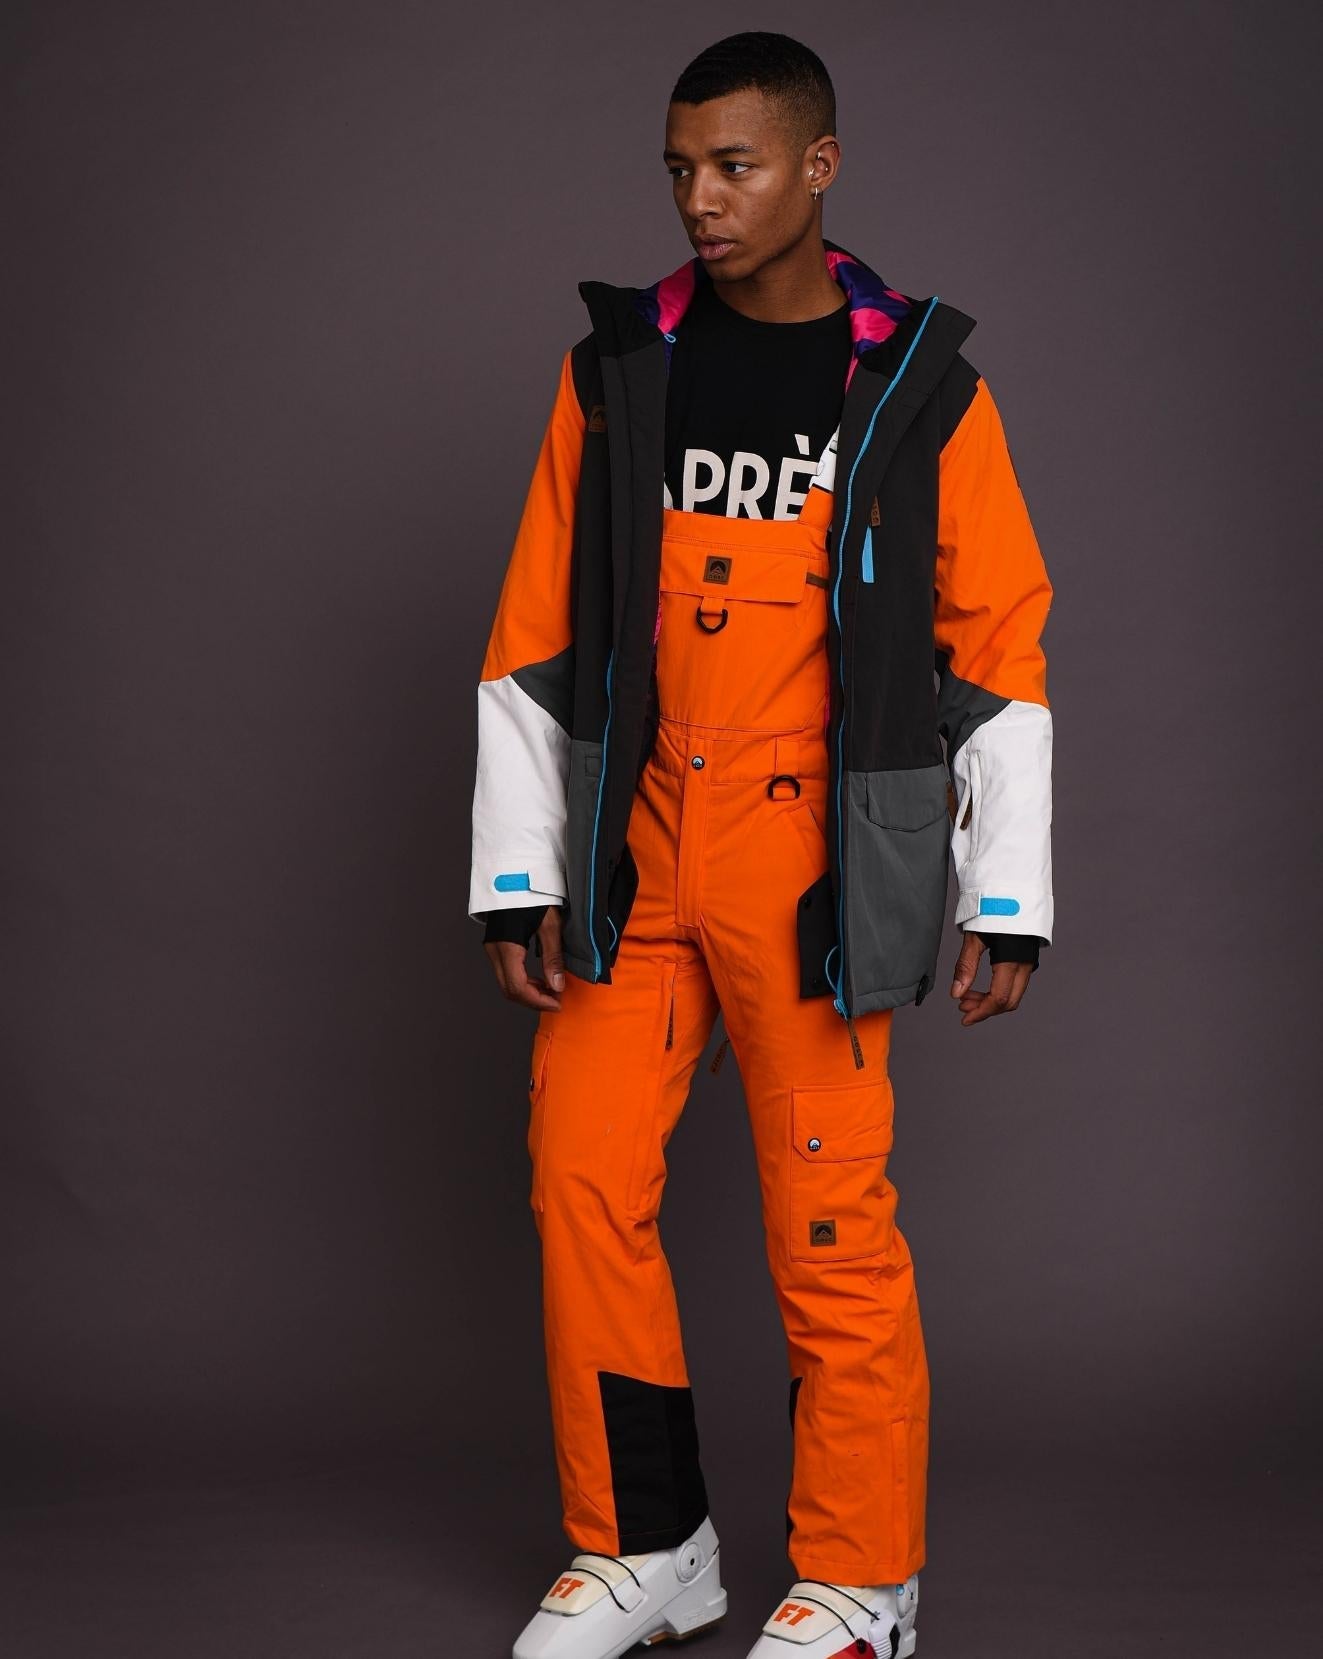 Yeh Man Men's Ski & Snowboard Bib Pant - Orange – OOSC Clothing - USA